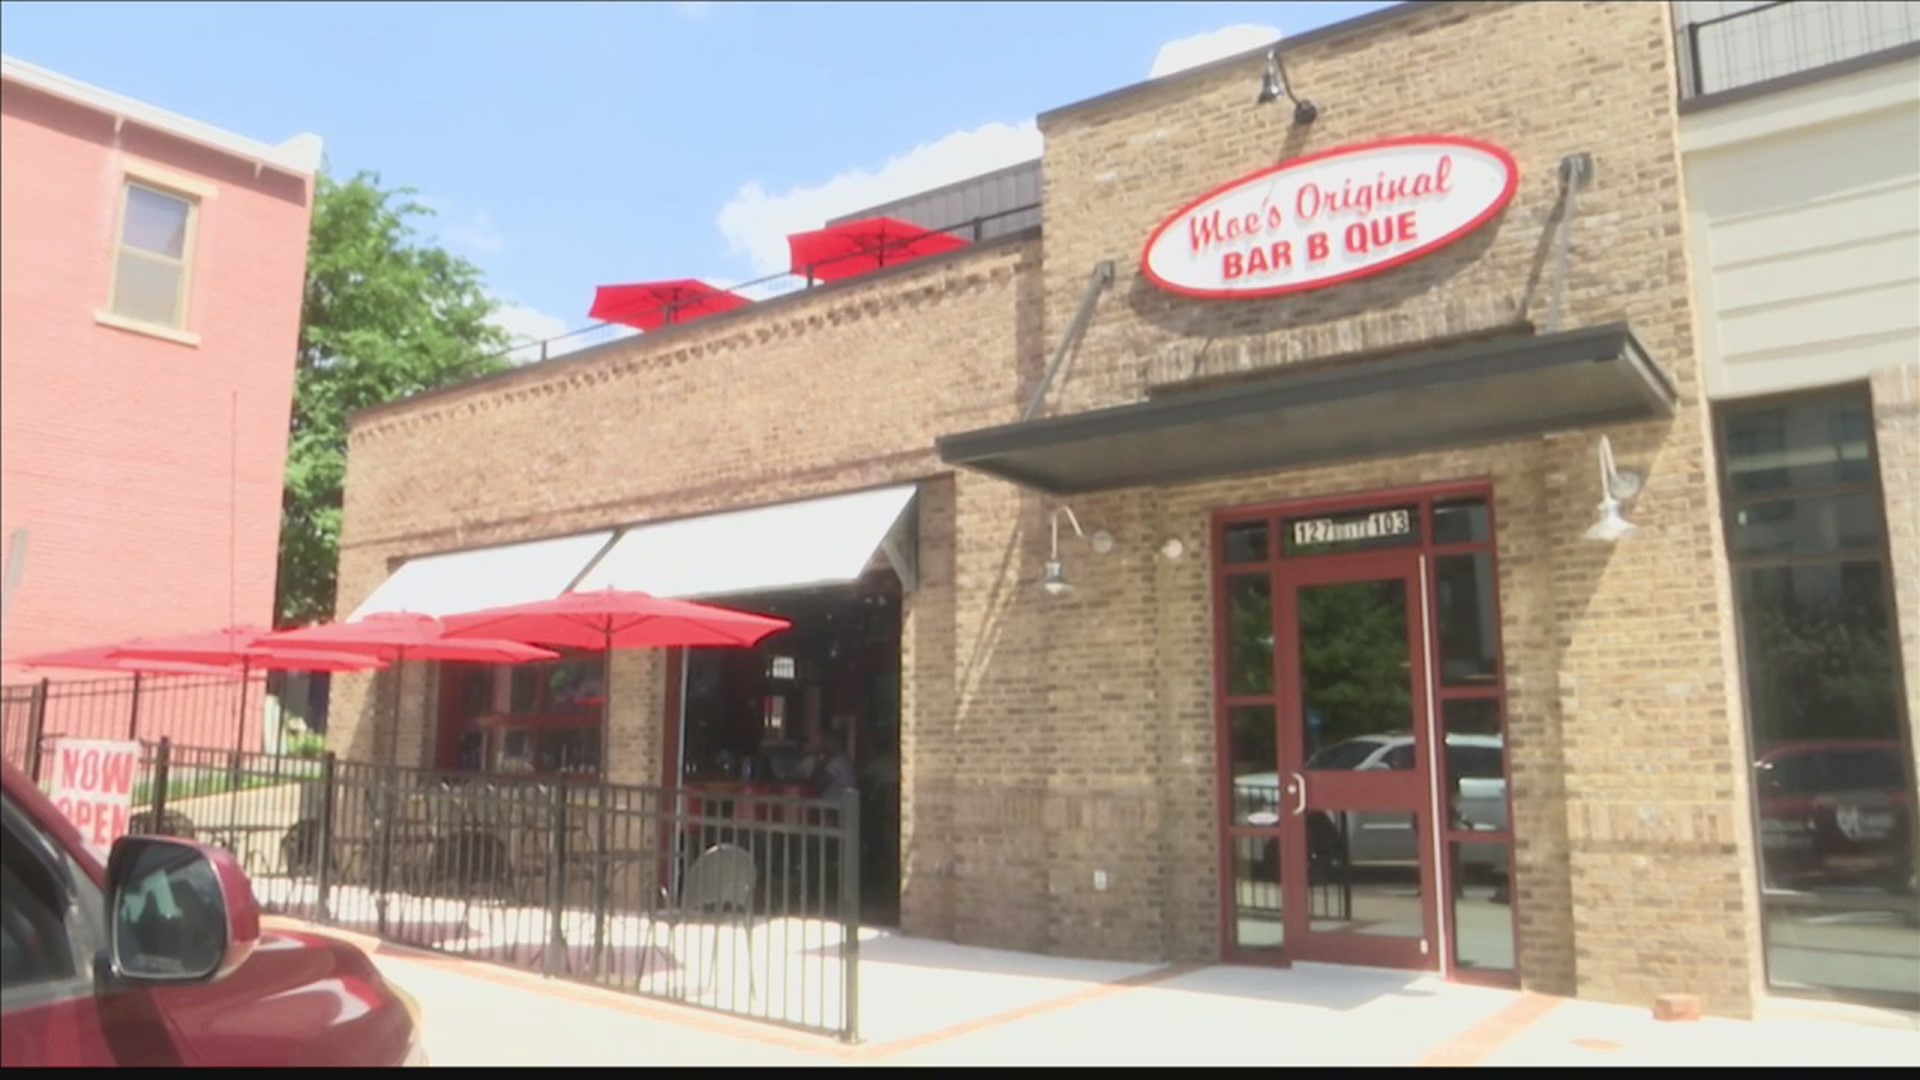 Moe's Original Bar B Que opens new location in Huntsville ...